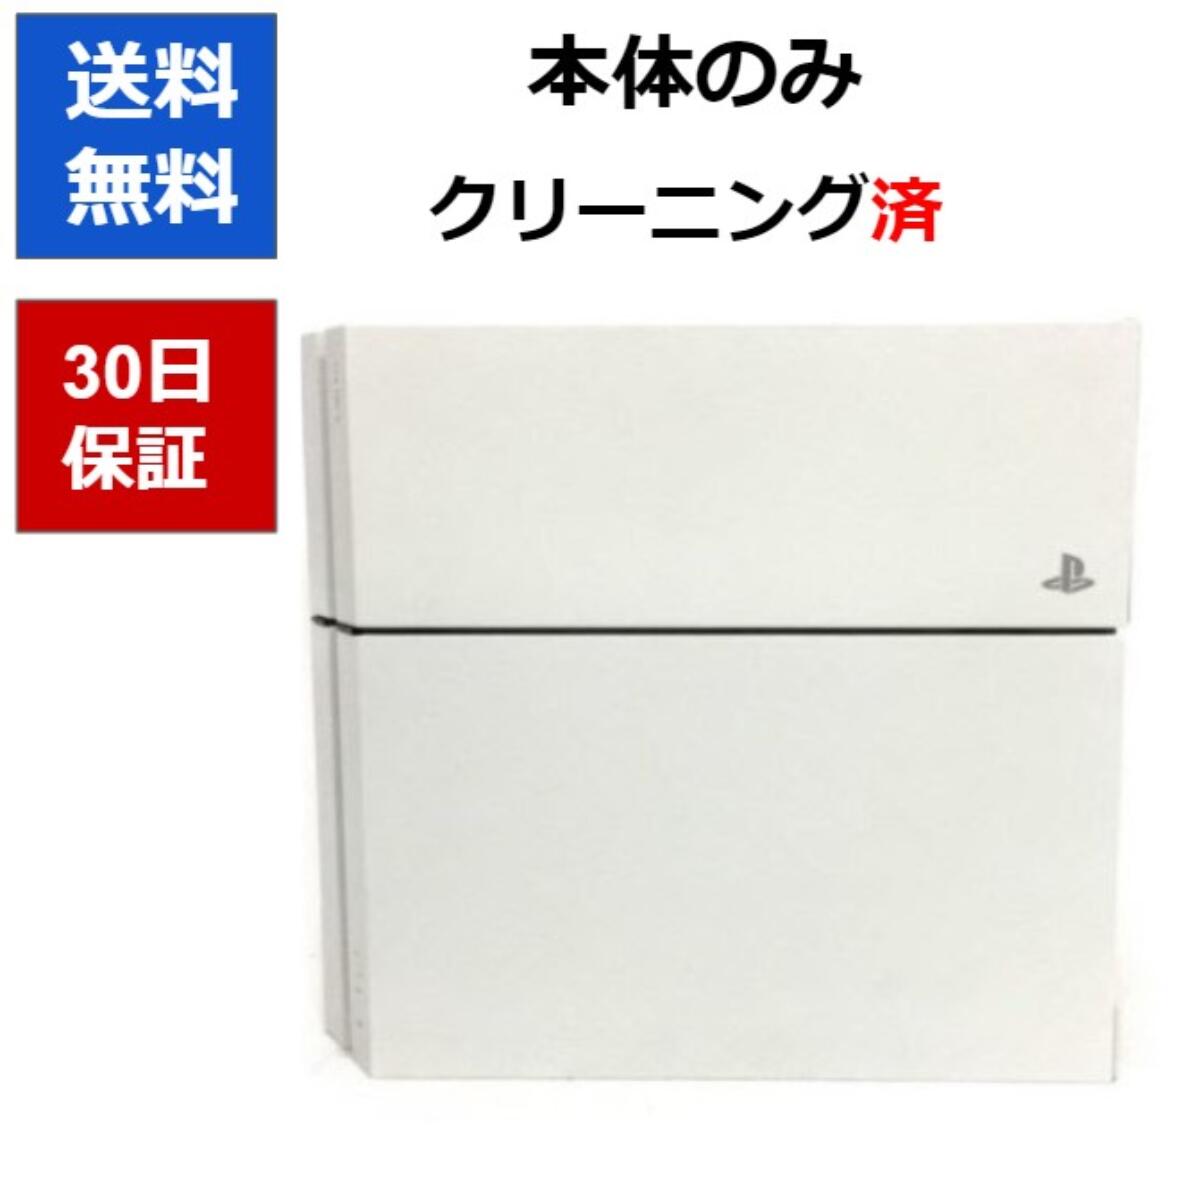 アウトレットの半額 「PlayStation®4ホワイト CUH-1100AB02」 500GB 家庭用ゲーム本体